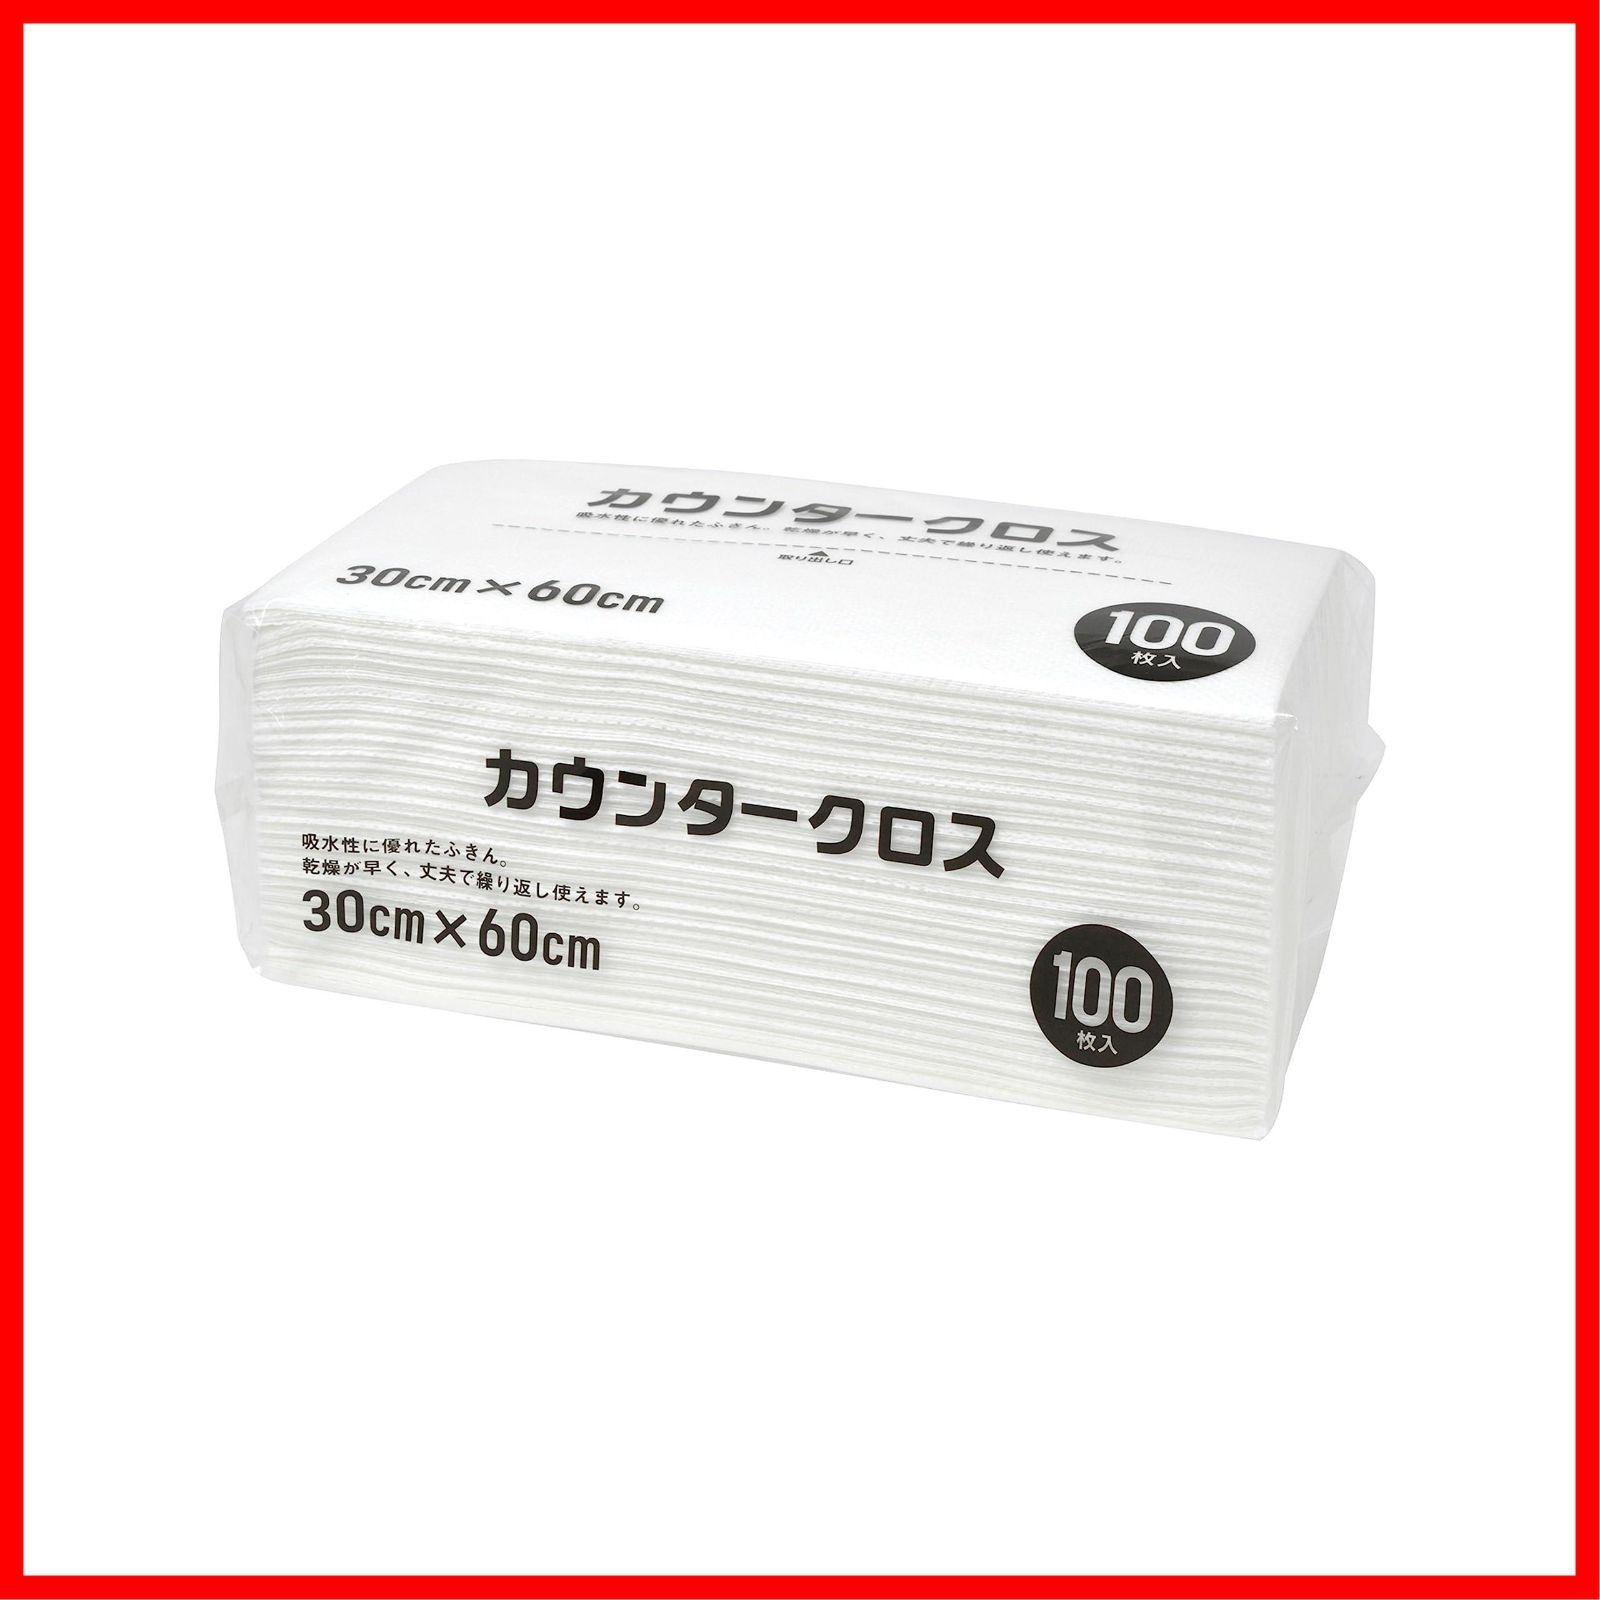 【特価商品】カウンタークロス 100枚 ホワイト Bussan) 約60×30cm 使い捨て 不織布 大和物産(Daiwa ふきん テーブルダスター  業務用